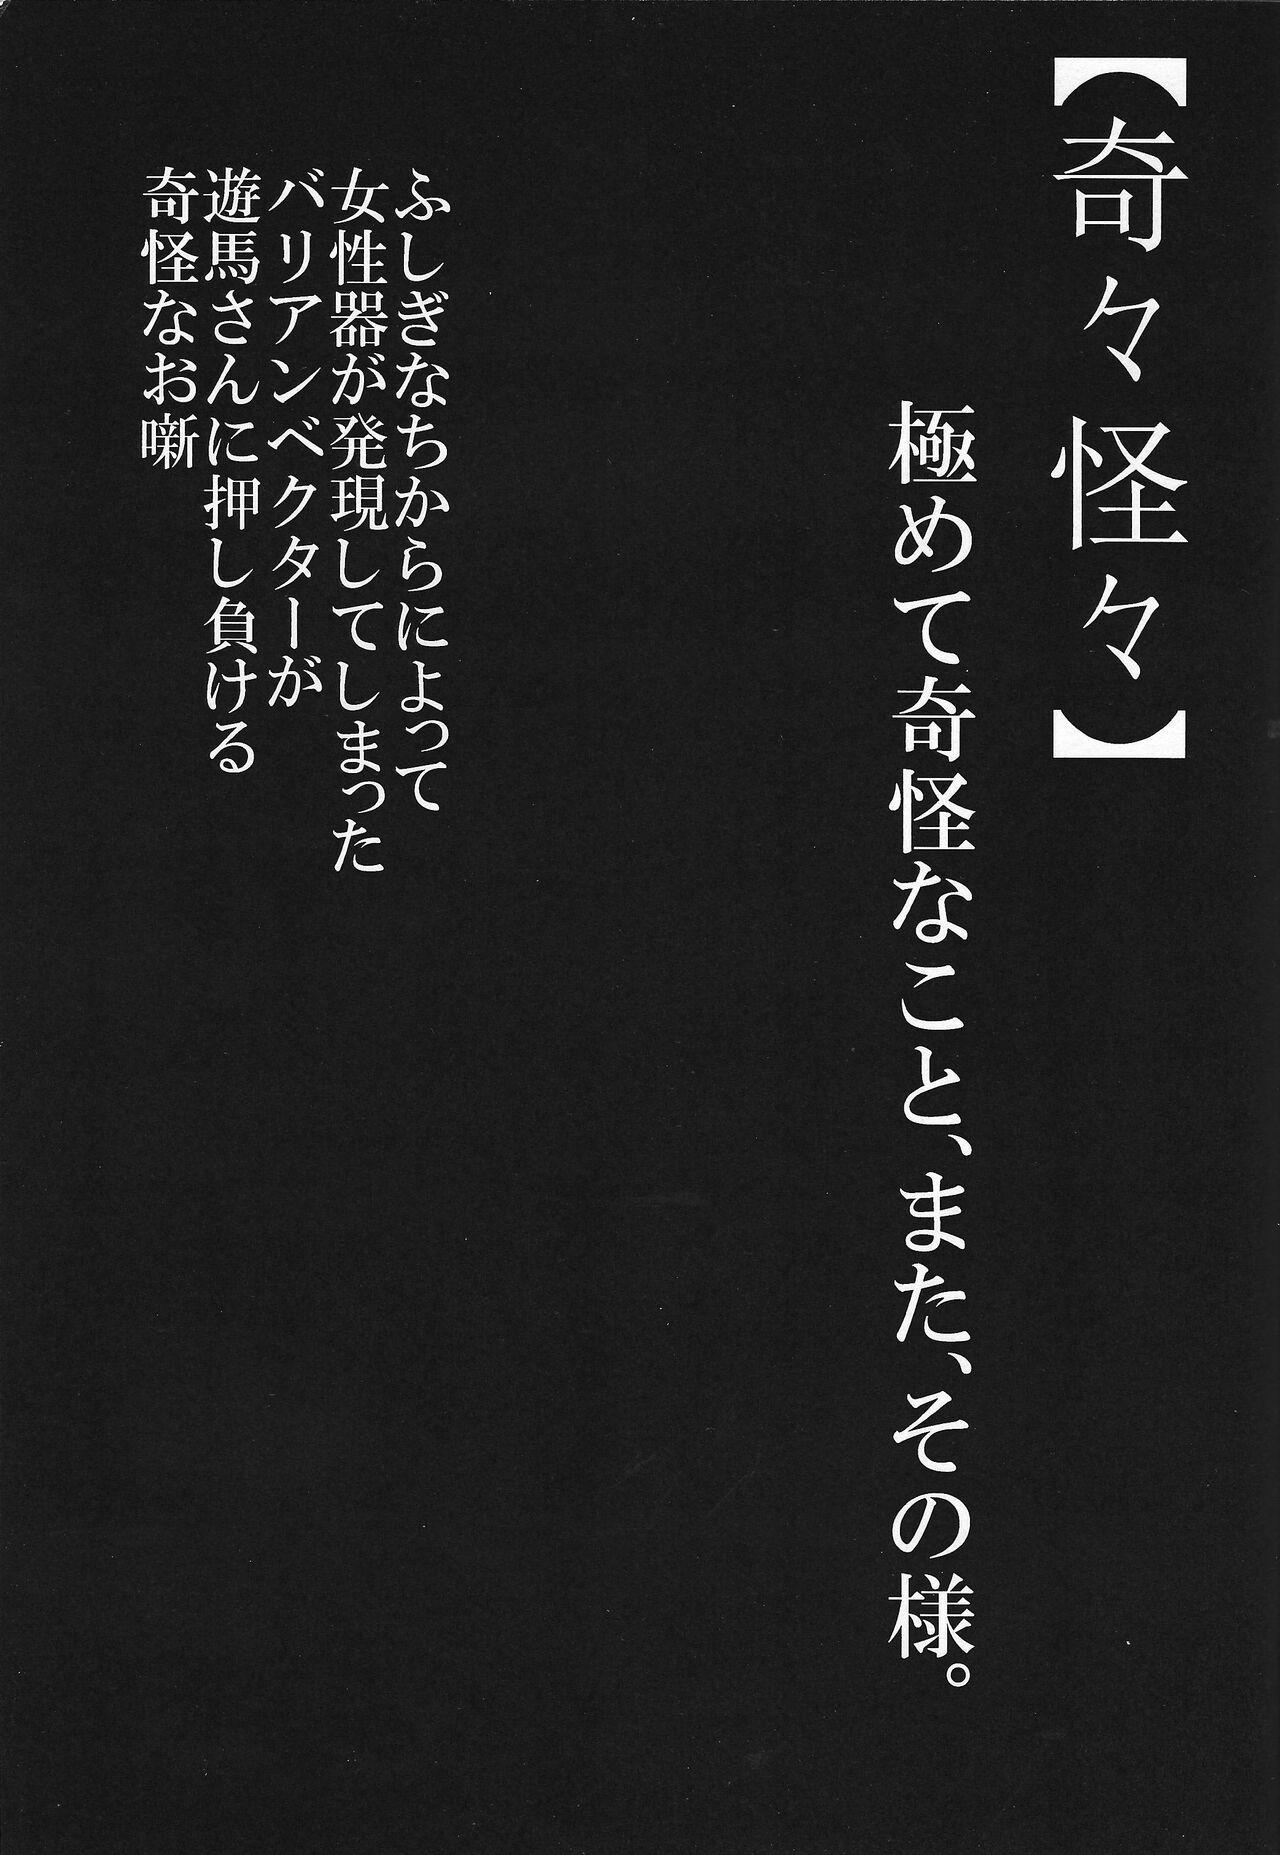 Dance Kikikaikai - Yu-gi-oh zexal 19yo - Page 2